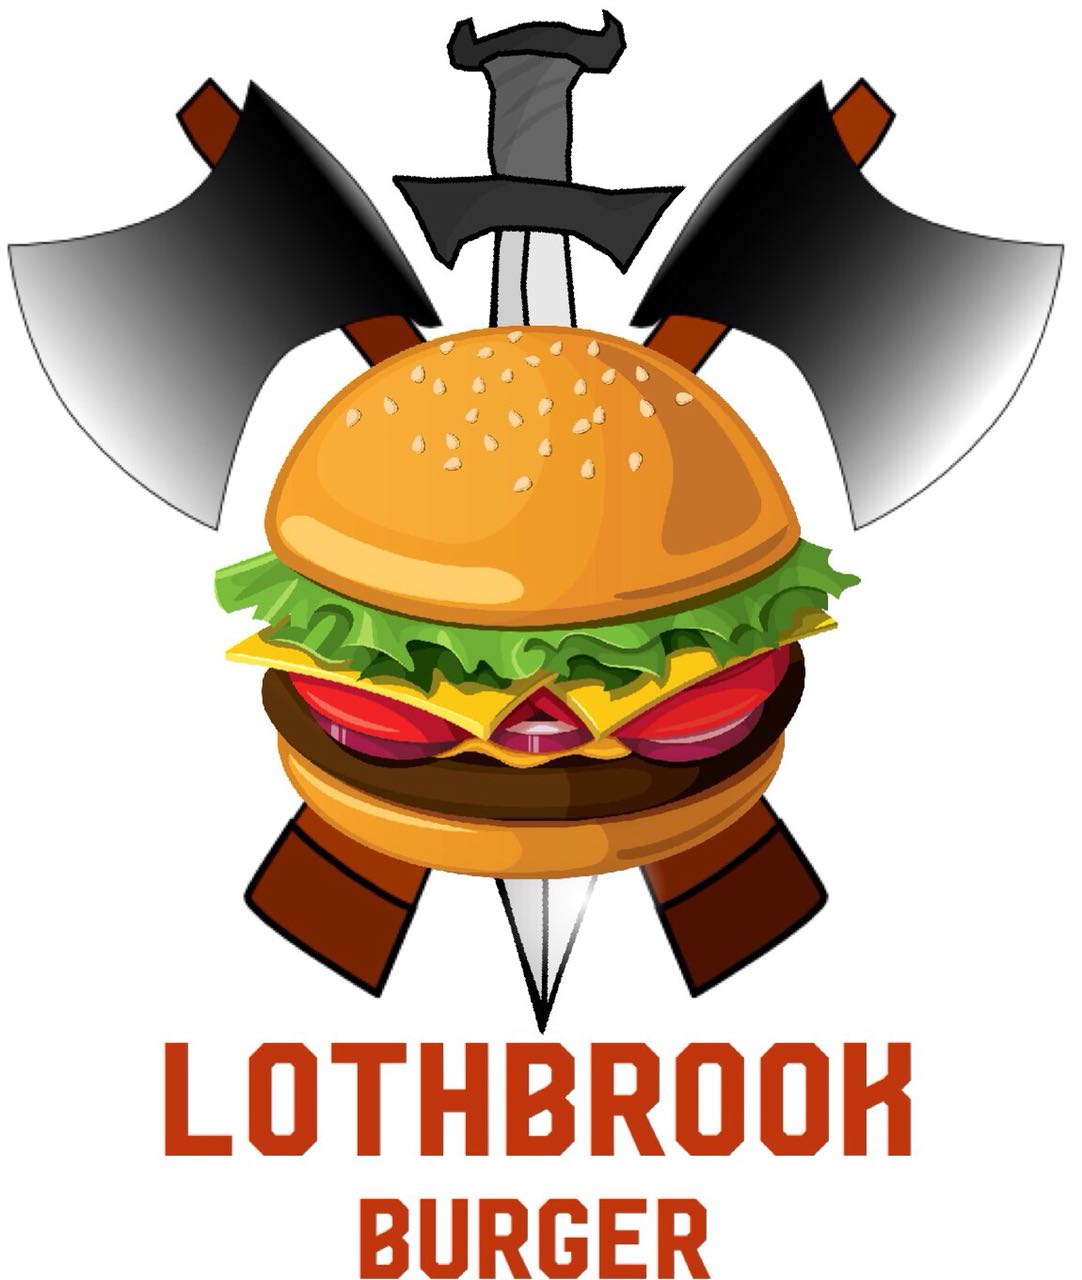 Lothbrook Burger